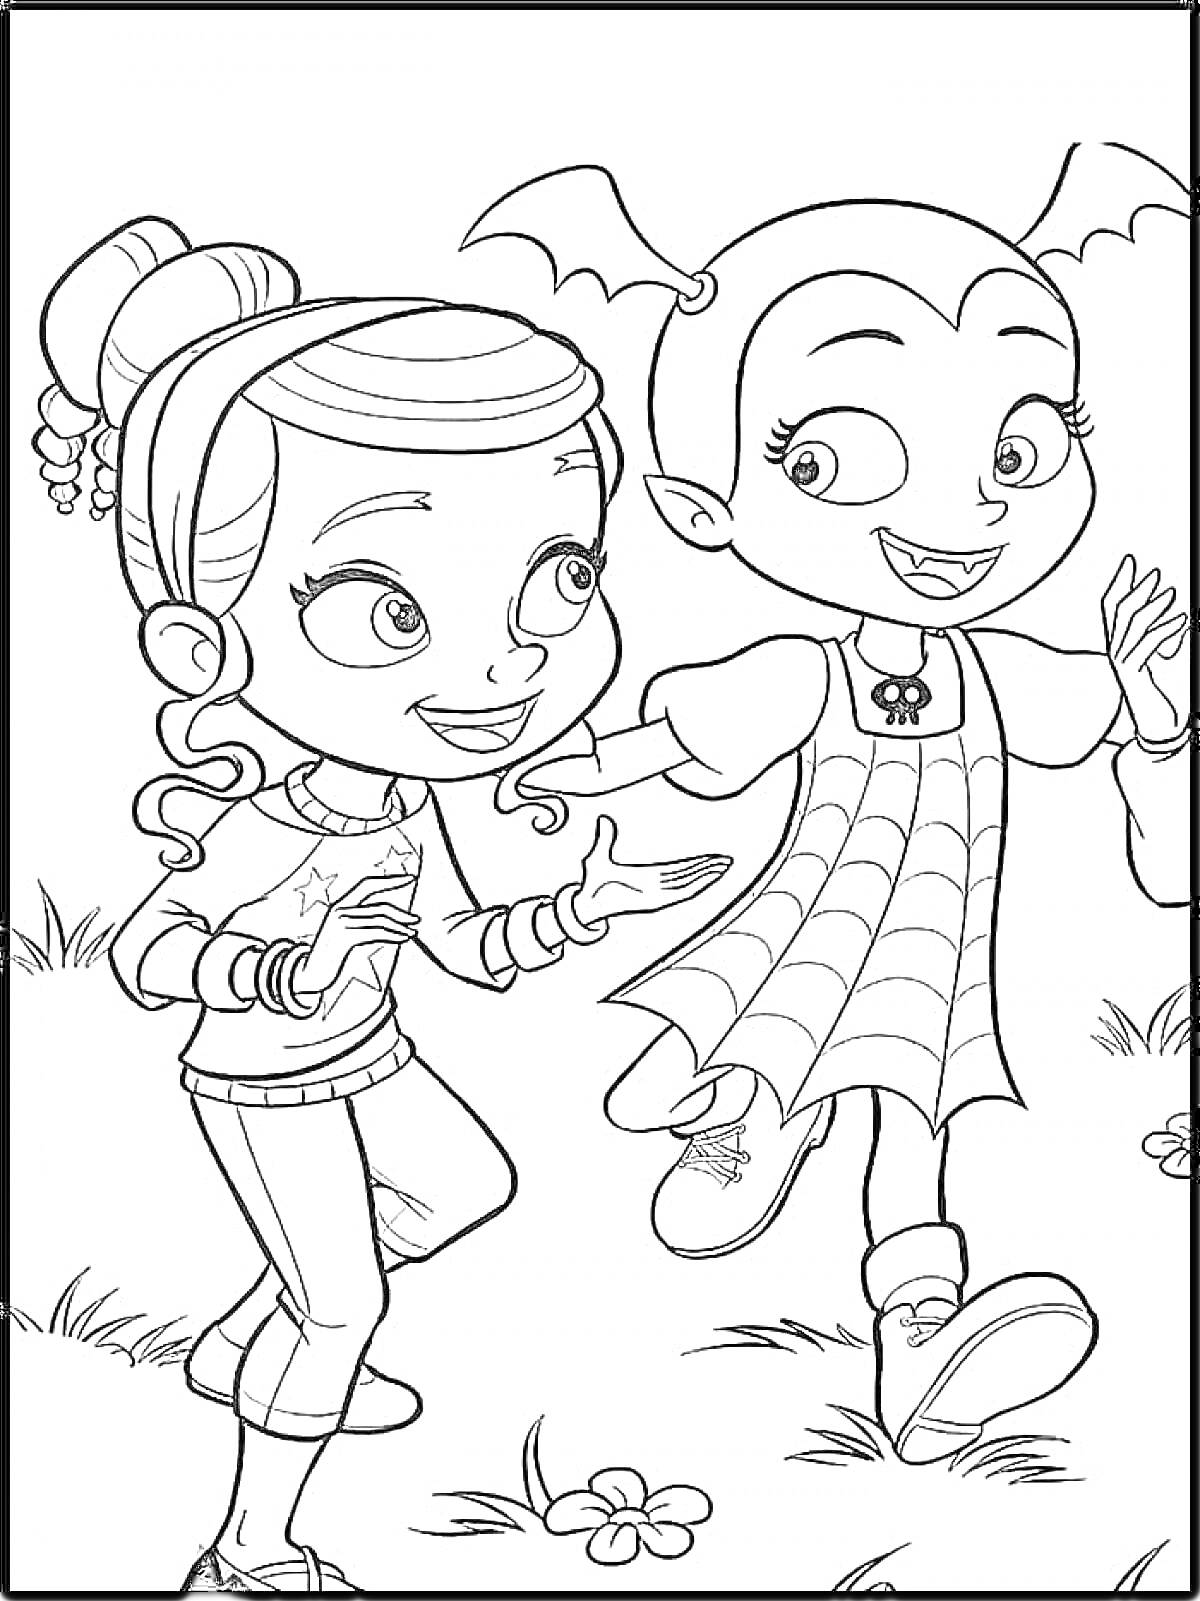 Раскраска Две девочки на лужайке — одна с прической, другая в платье с крыльями летучей мыши